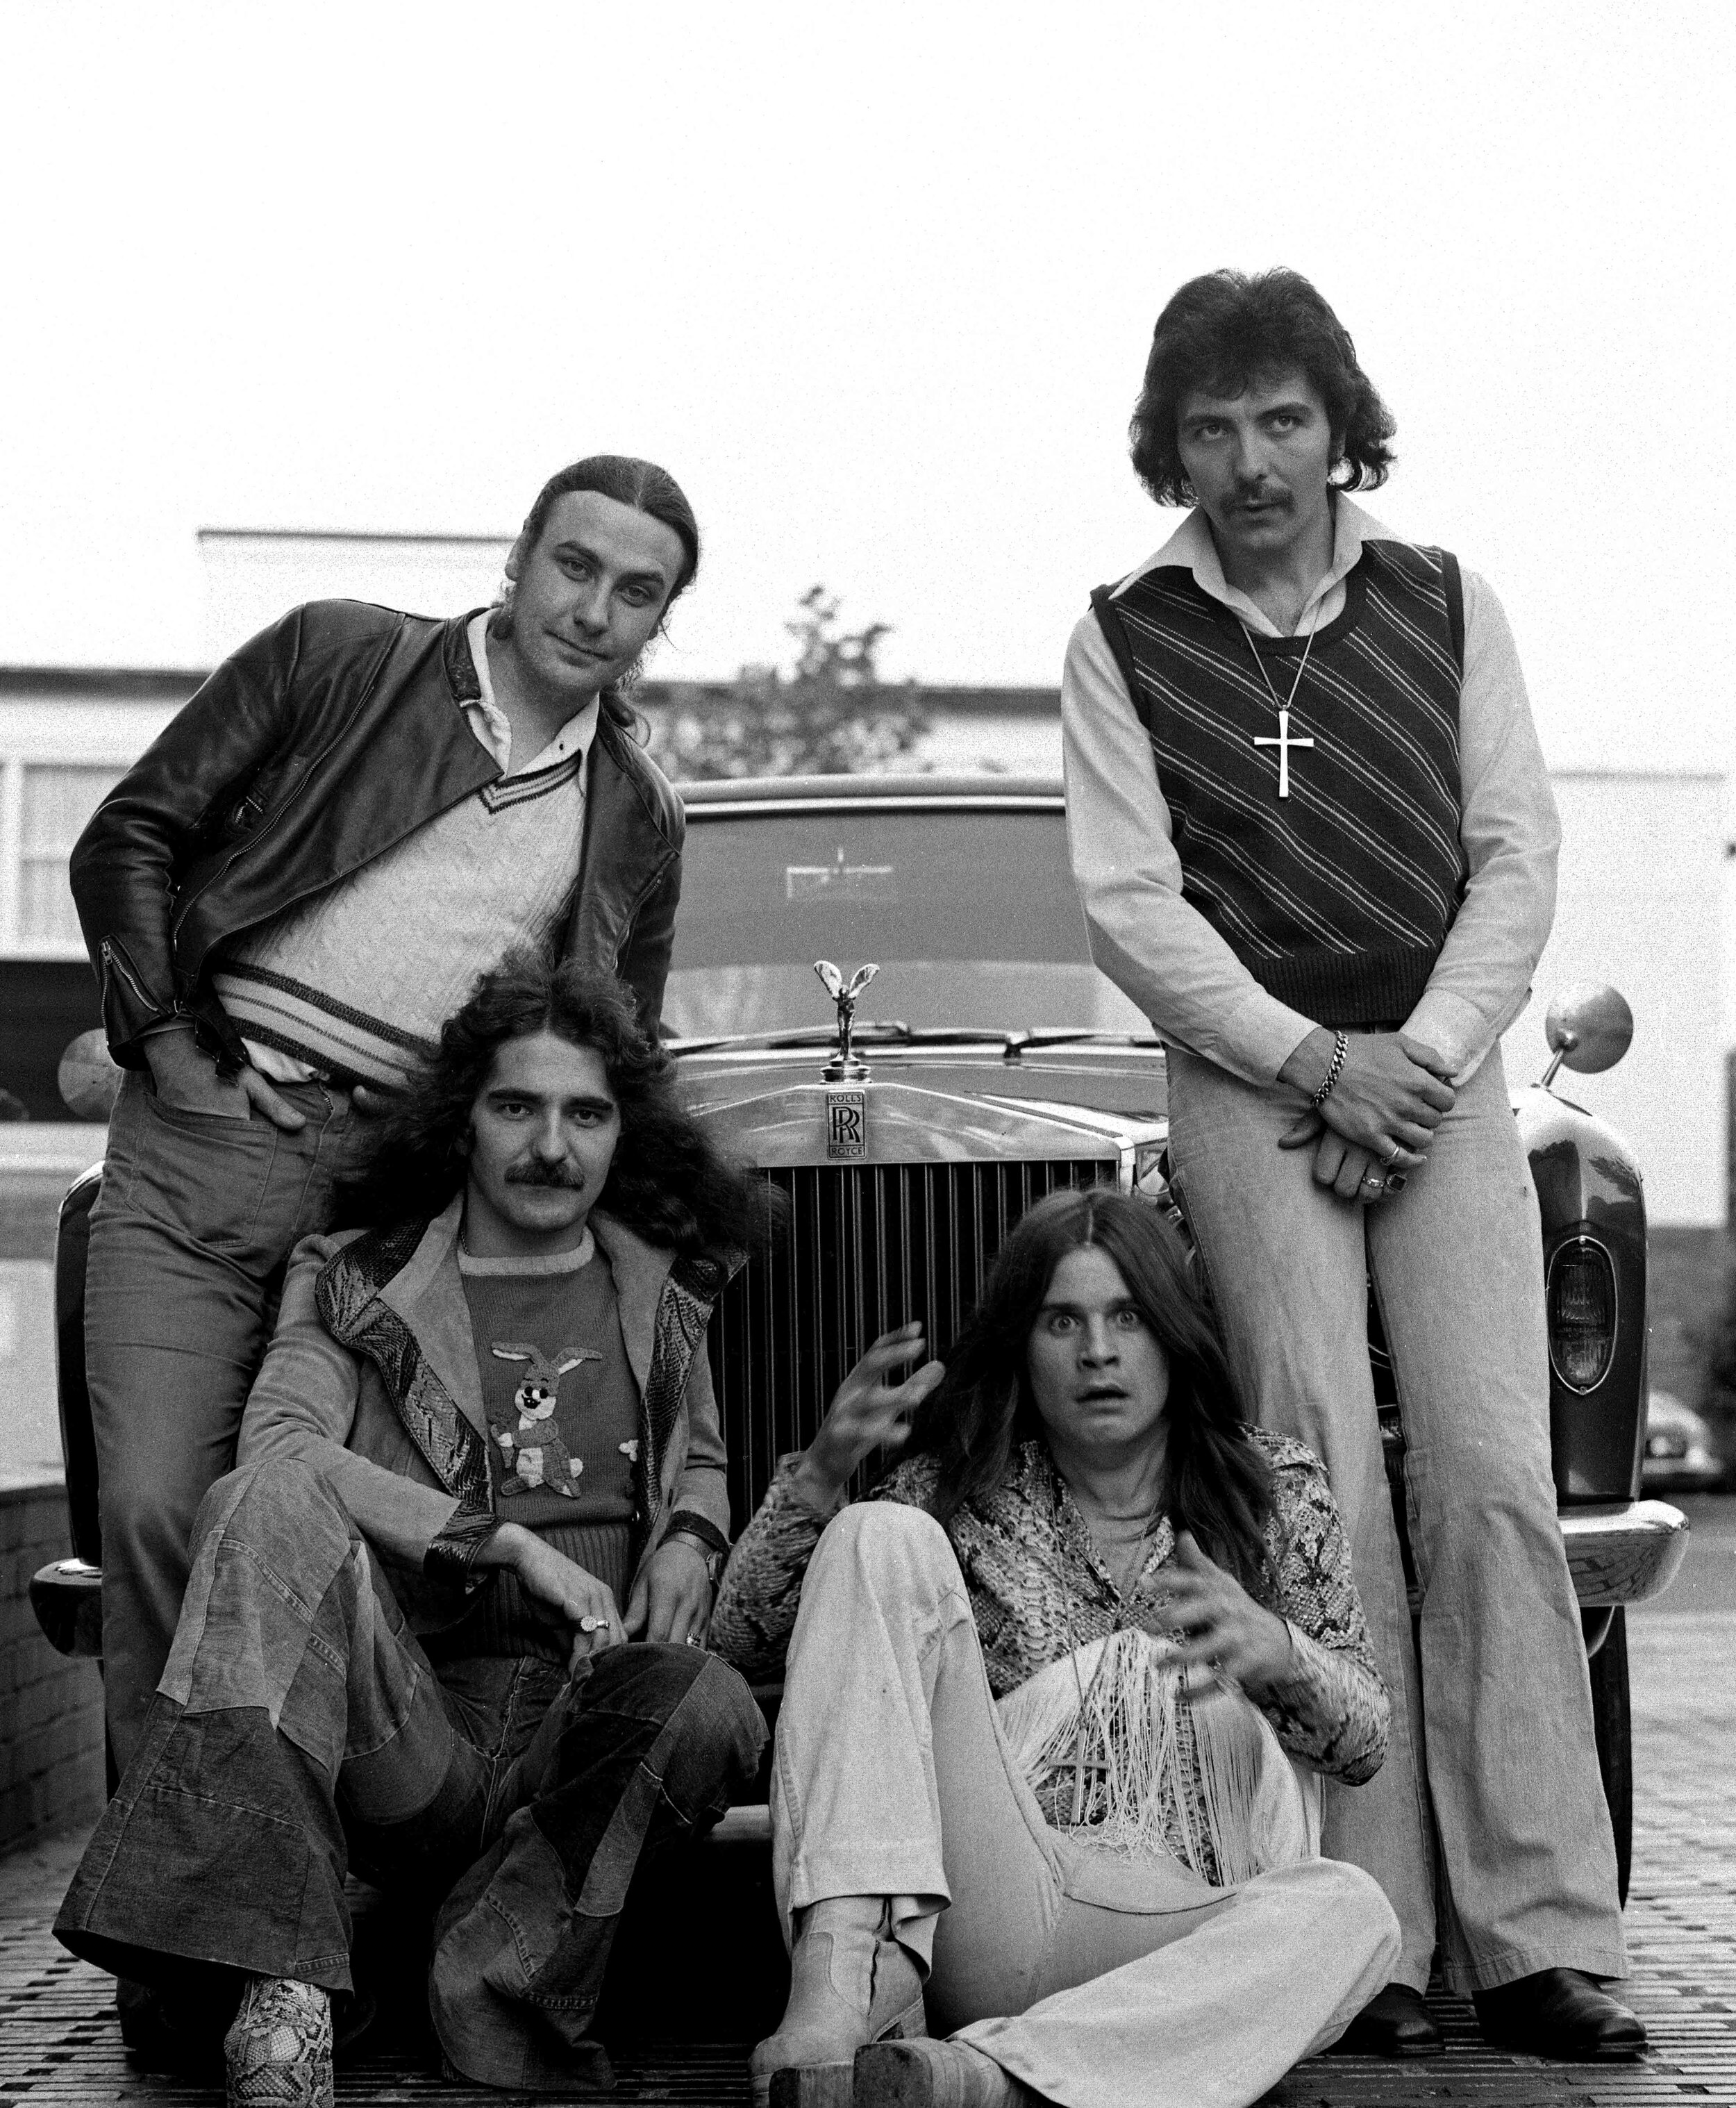 Black Sabbath with their Rolls Royce.